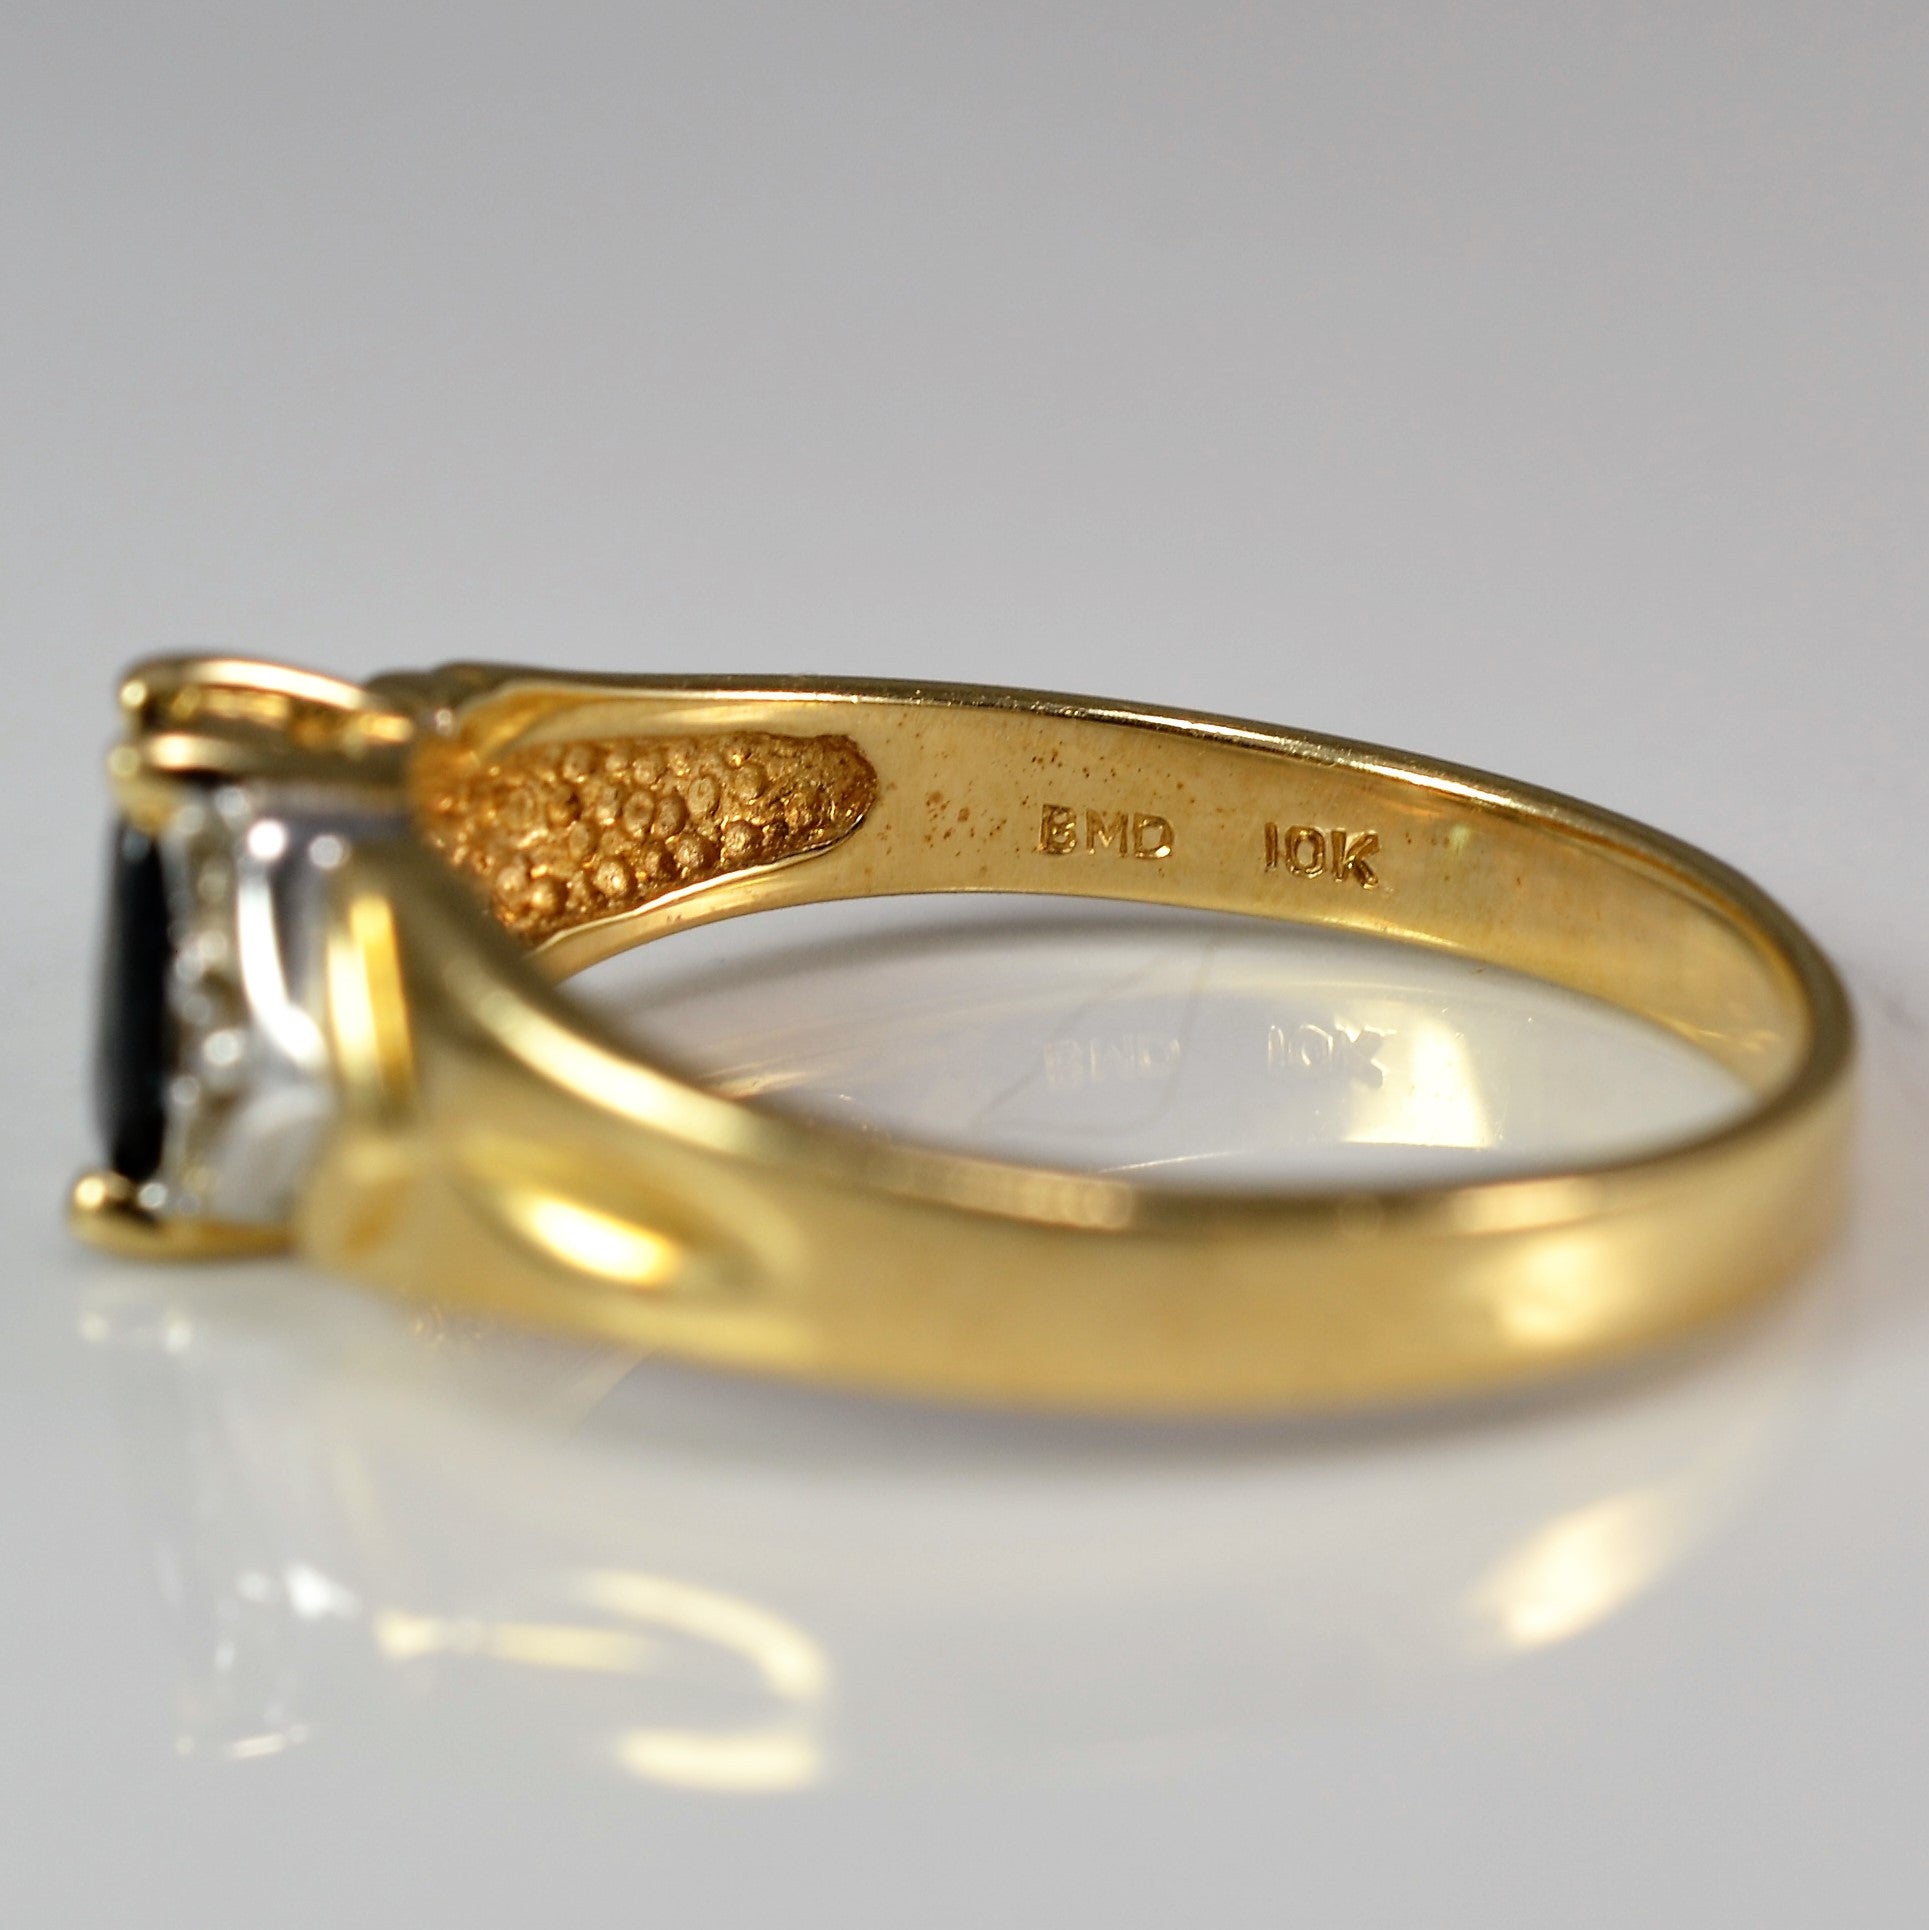 Oval Cut Sapphire & Diamond Ring | 0.01 ctw, SZ 6.5 |